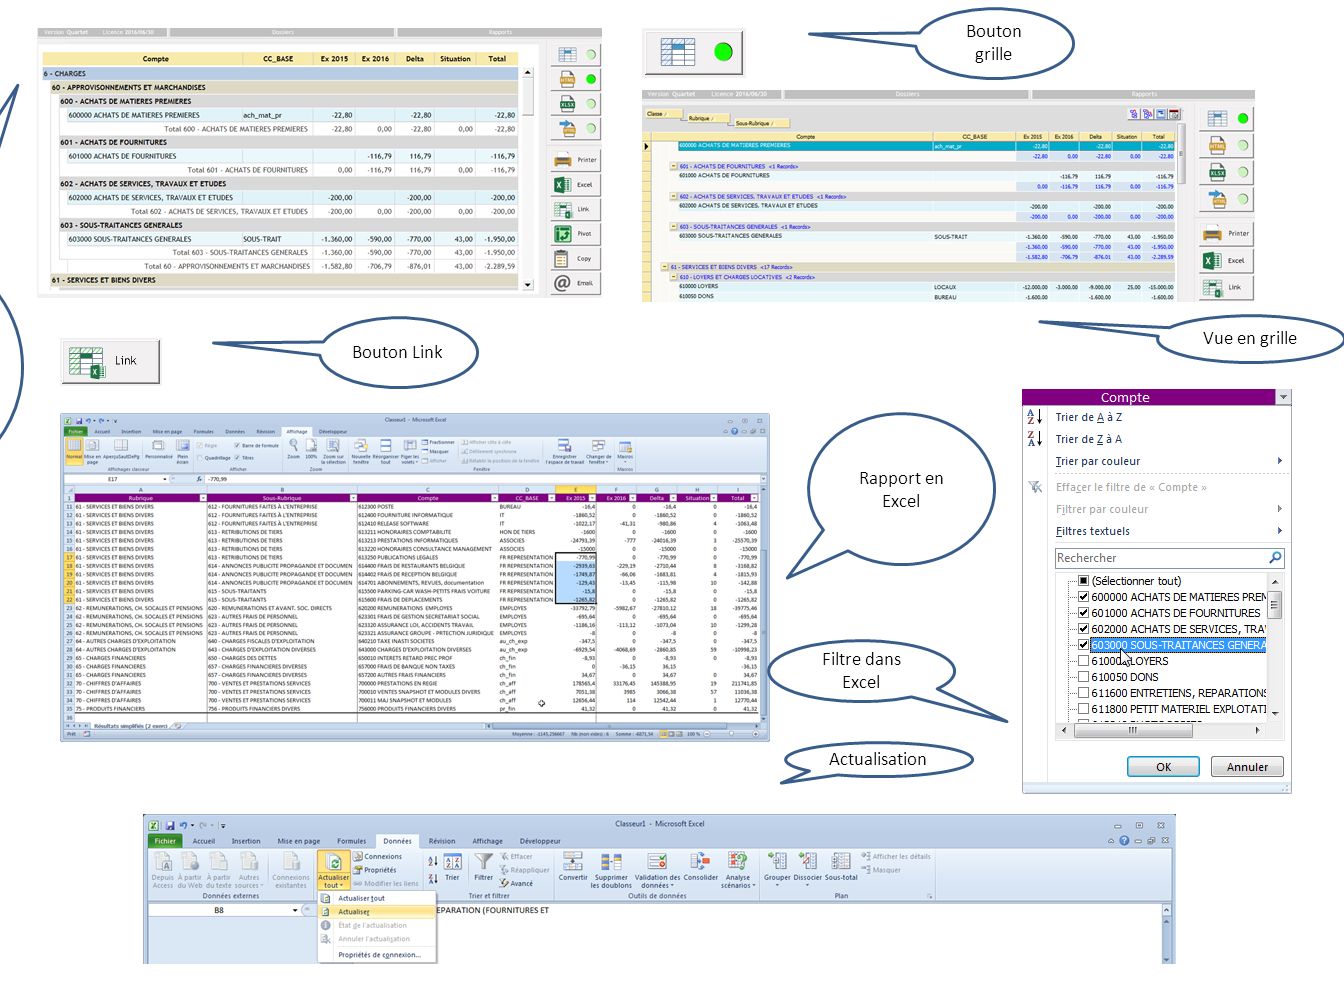 Lancement du rapport, qui n’était pas en grille, mais en html Vue en grille Rapport en Excel Bouton grille Actualisation Filtre dans Excel Bouton Link